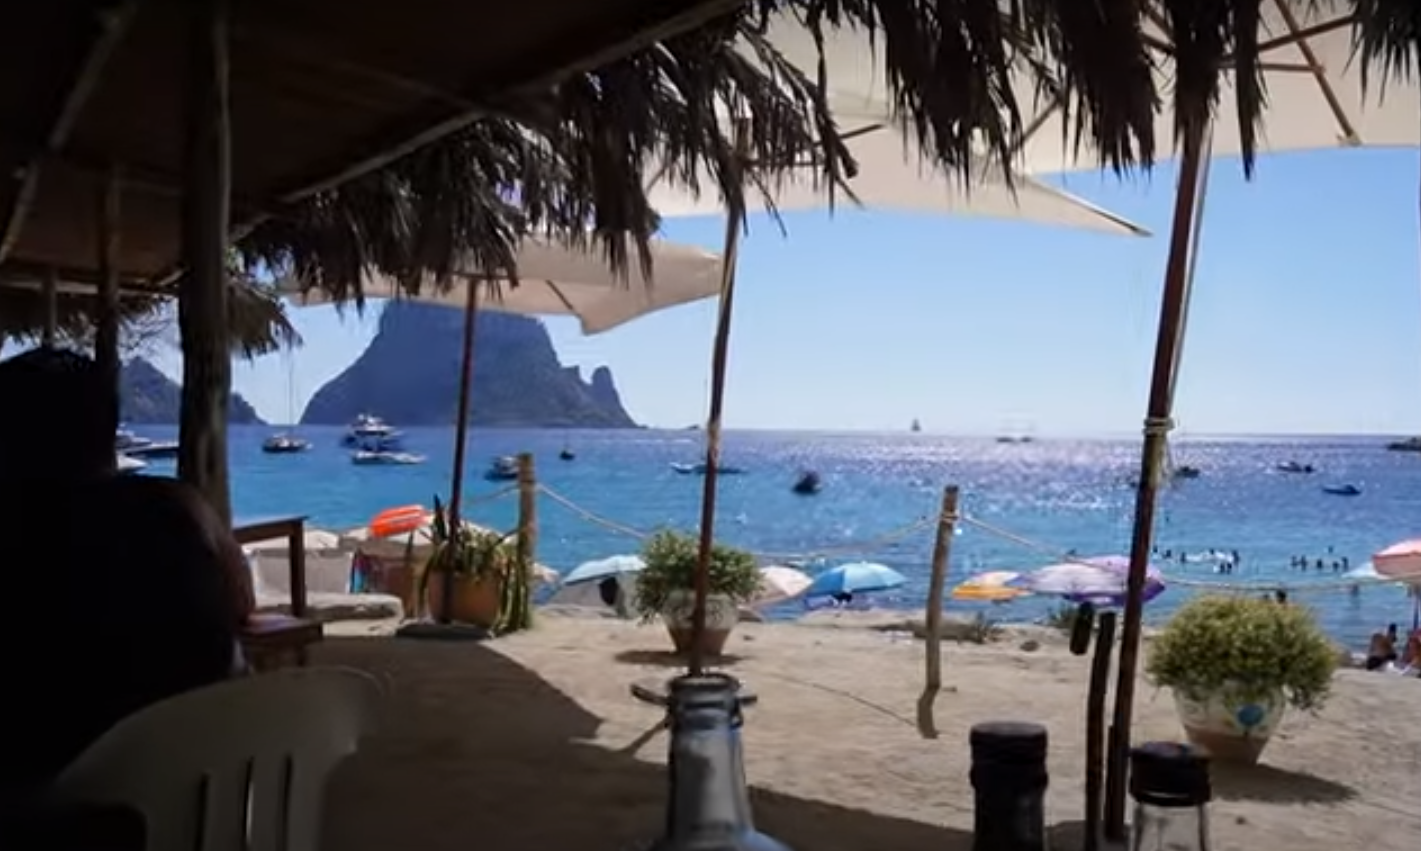 Der Mitbewohner zeigte seinen Urlaub auf Ibiza